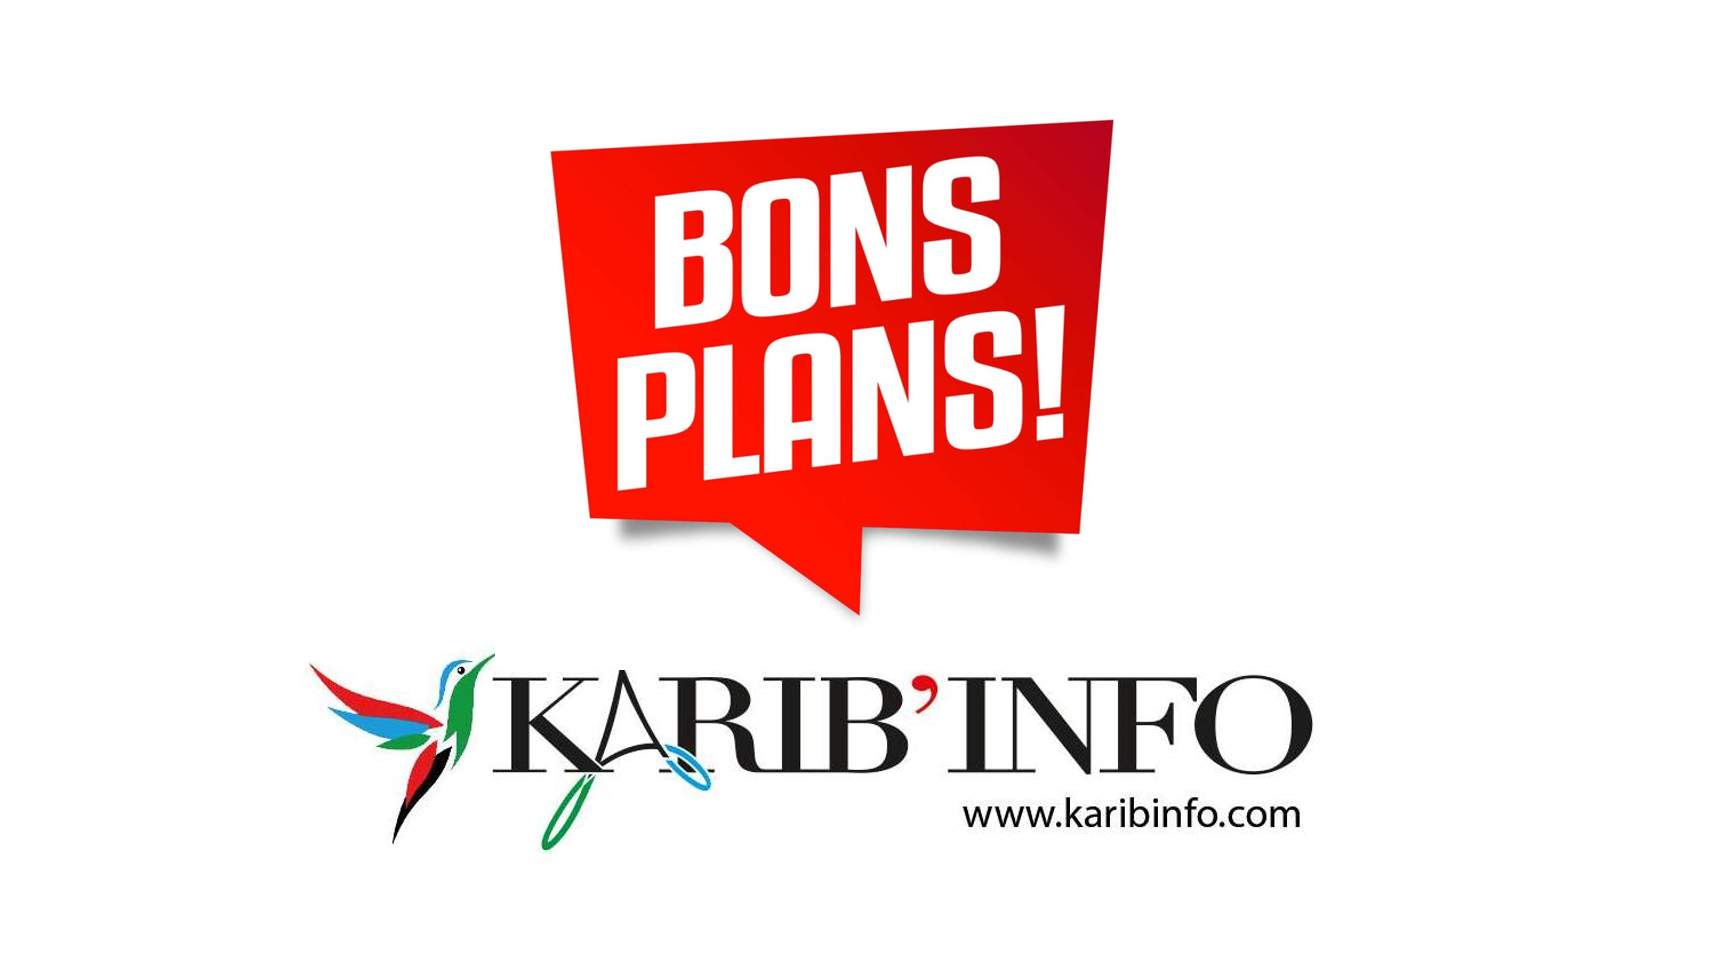 Les Bons Plans' de Karibinfo, votre guide en ligne dédié à la découverte des entreprises de la Caraïbe